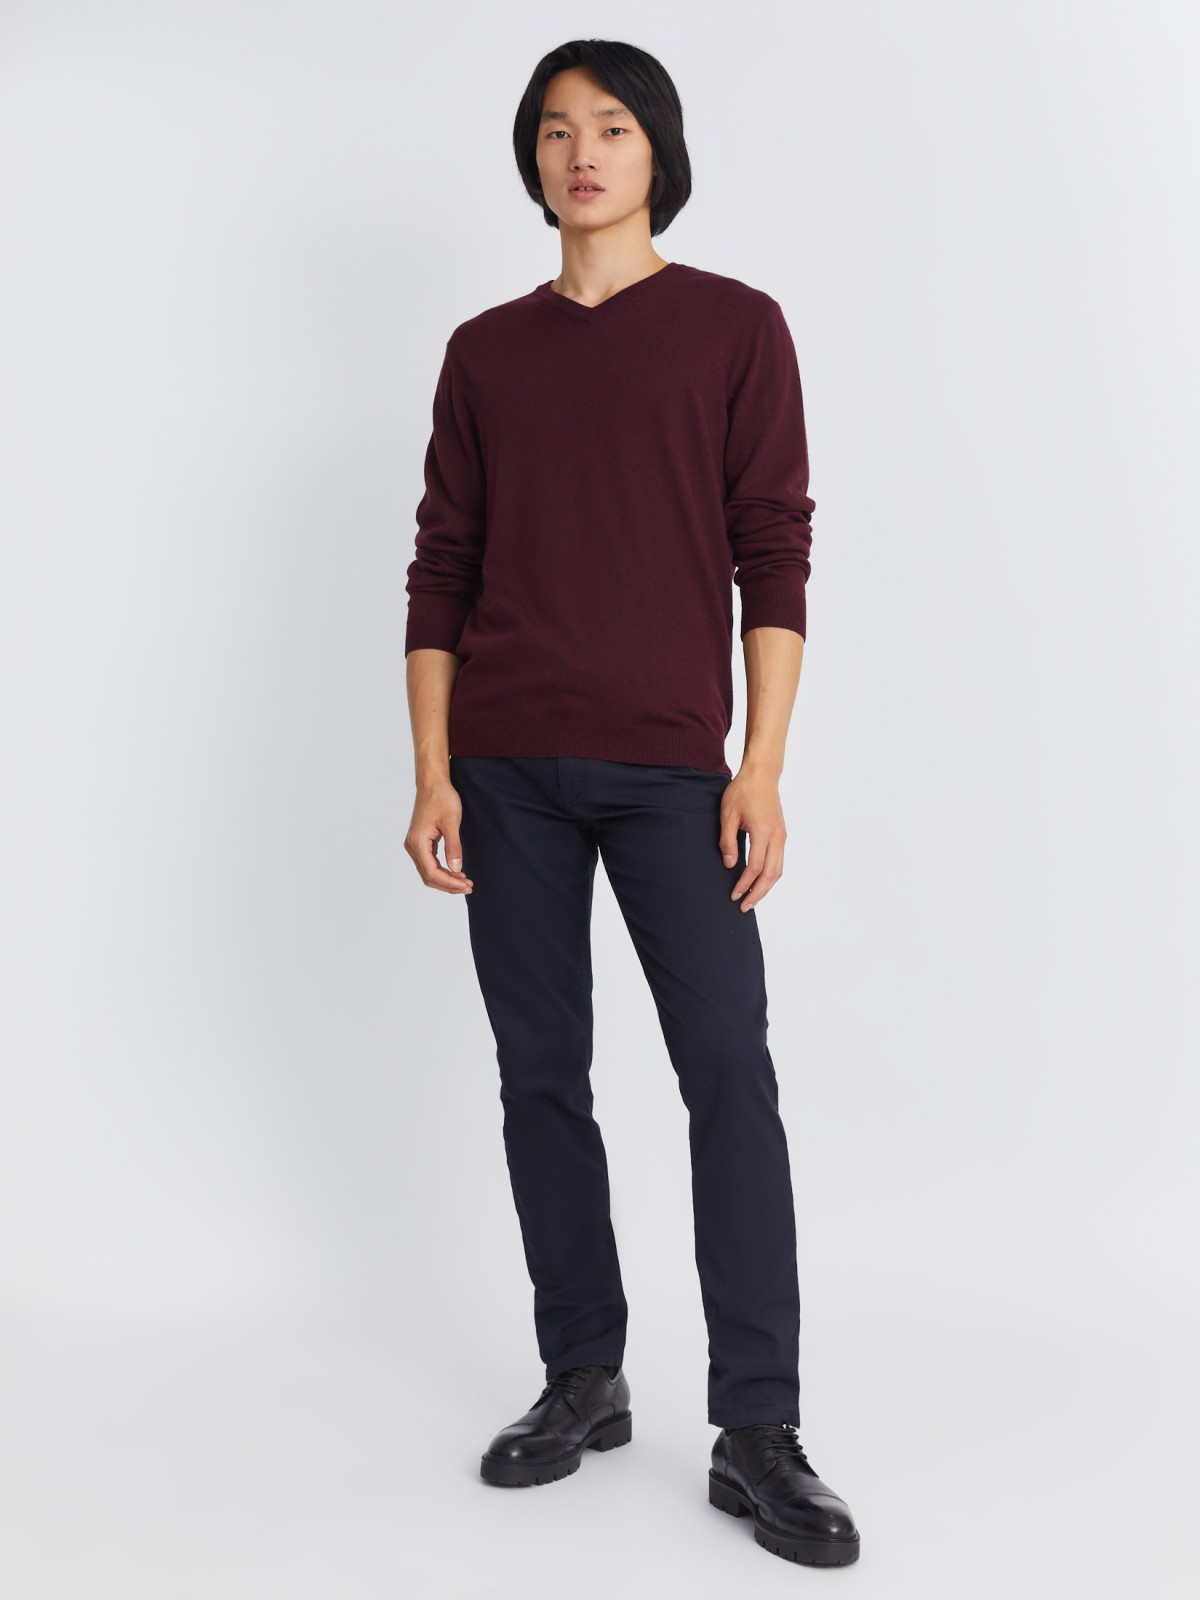 Шерстяной трикотажный пуловер с треугольным вырезом и длинным рукавом zolla 013346163042, цвет бордо, размер M - фото 2